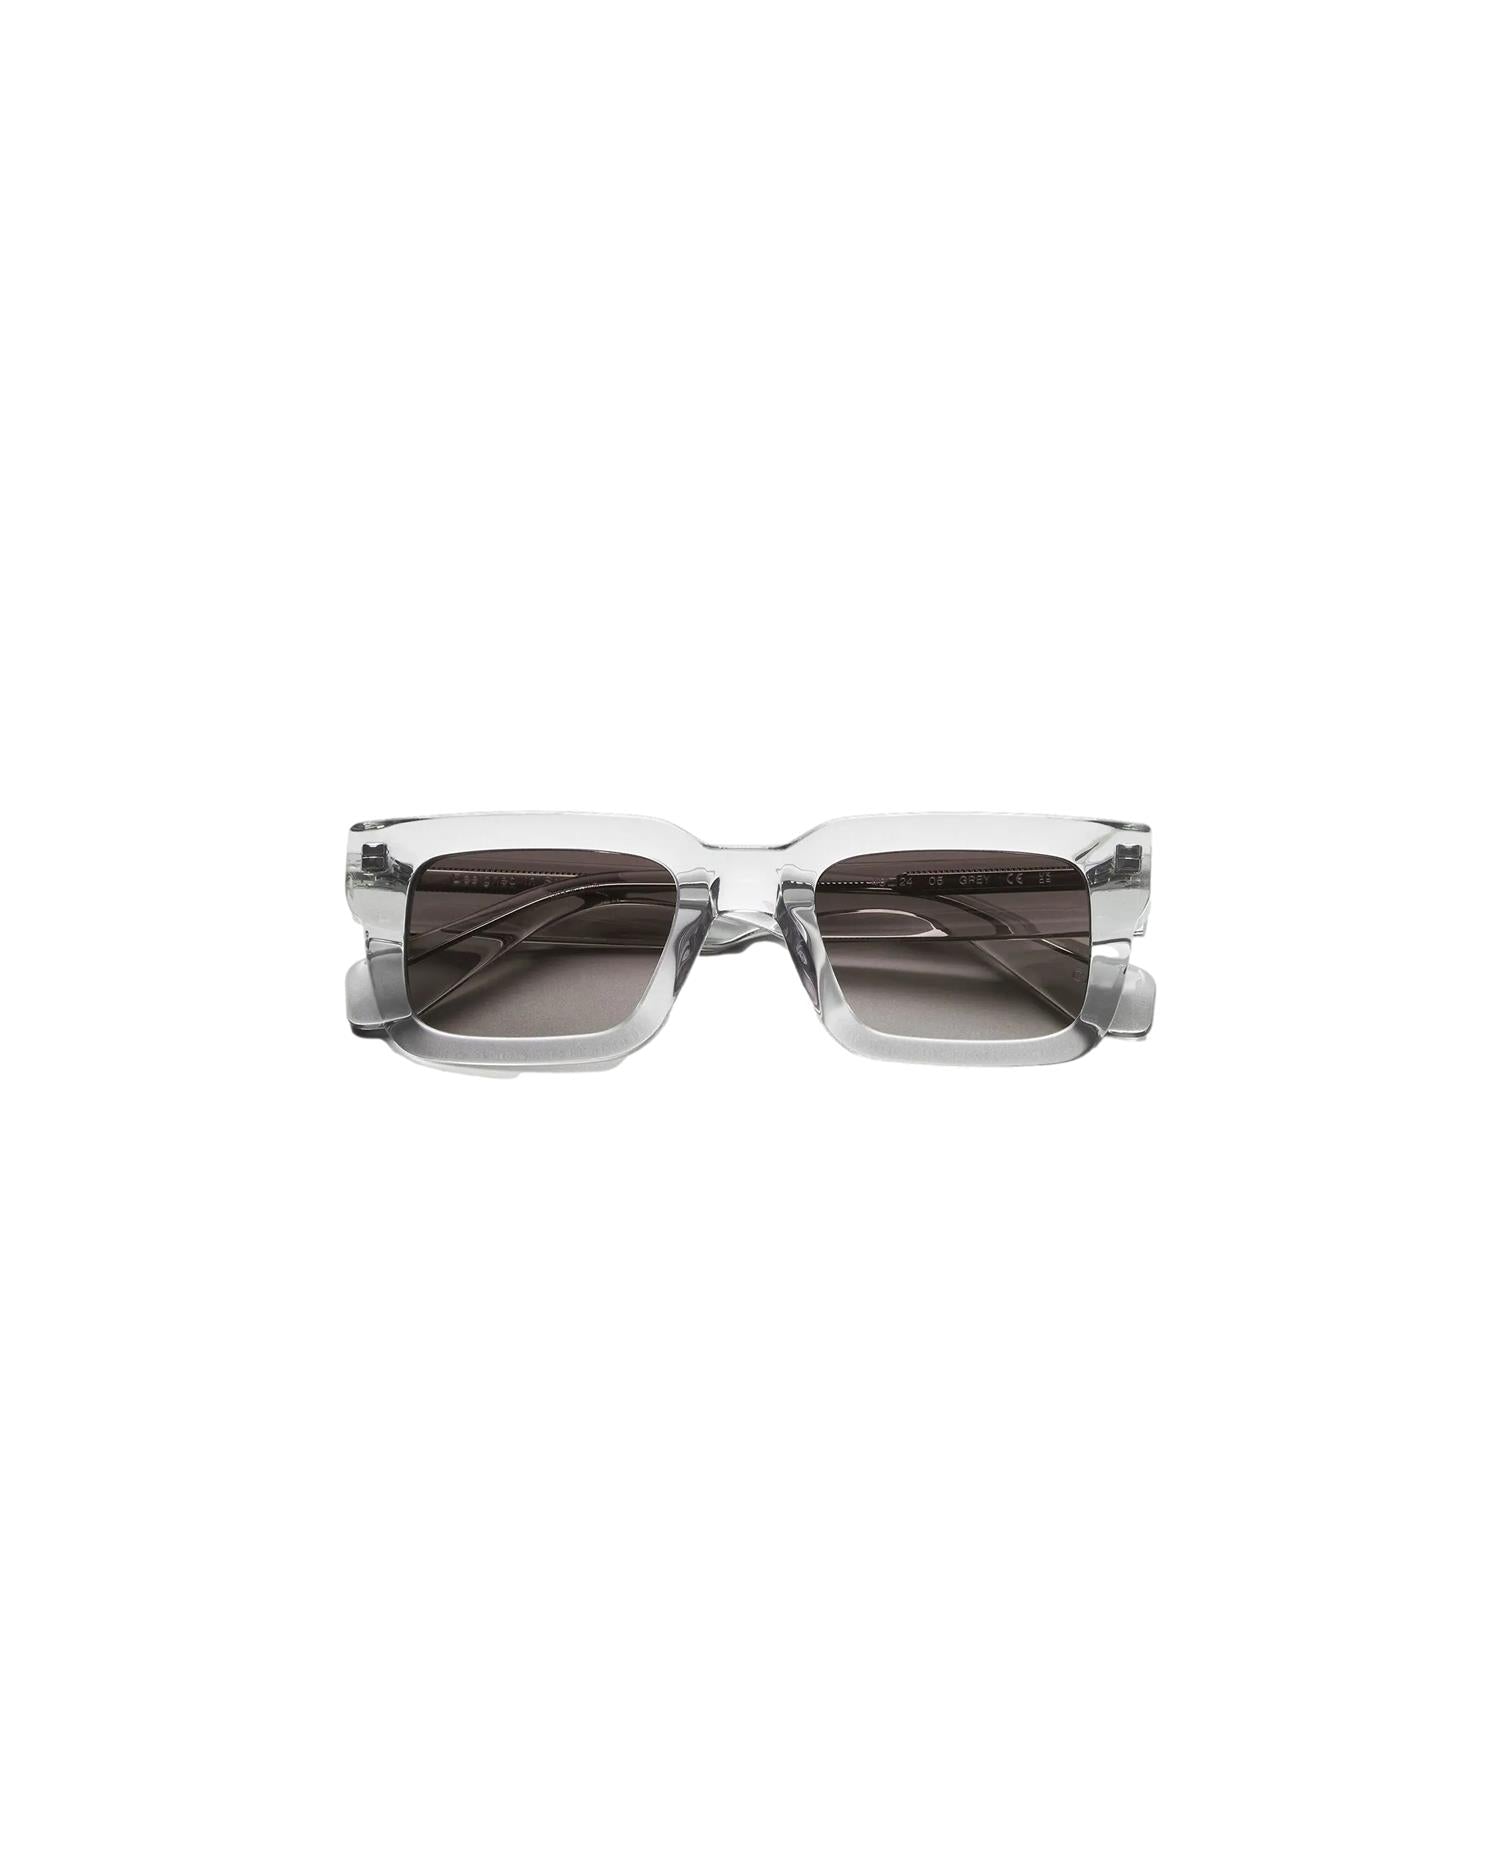 Chimi Eyewear 05 Grey Solbriller Grå - modostore.no